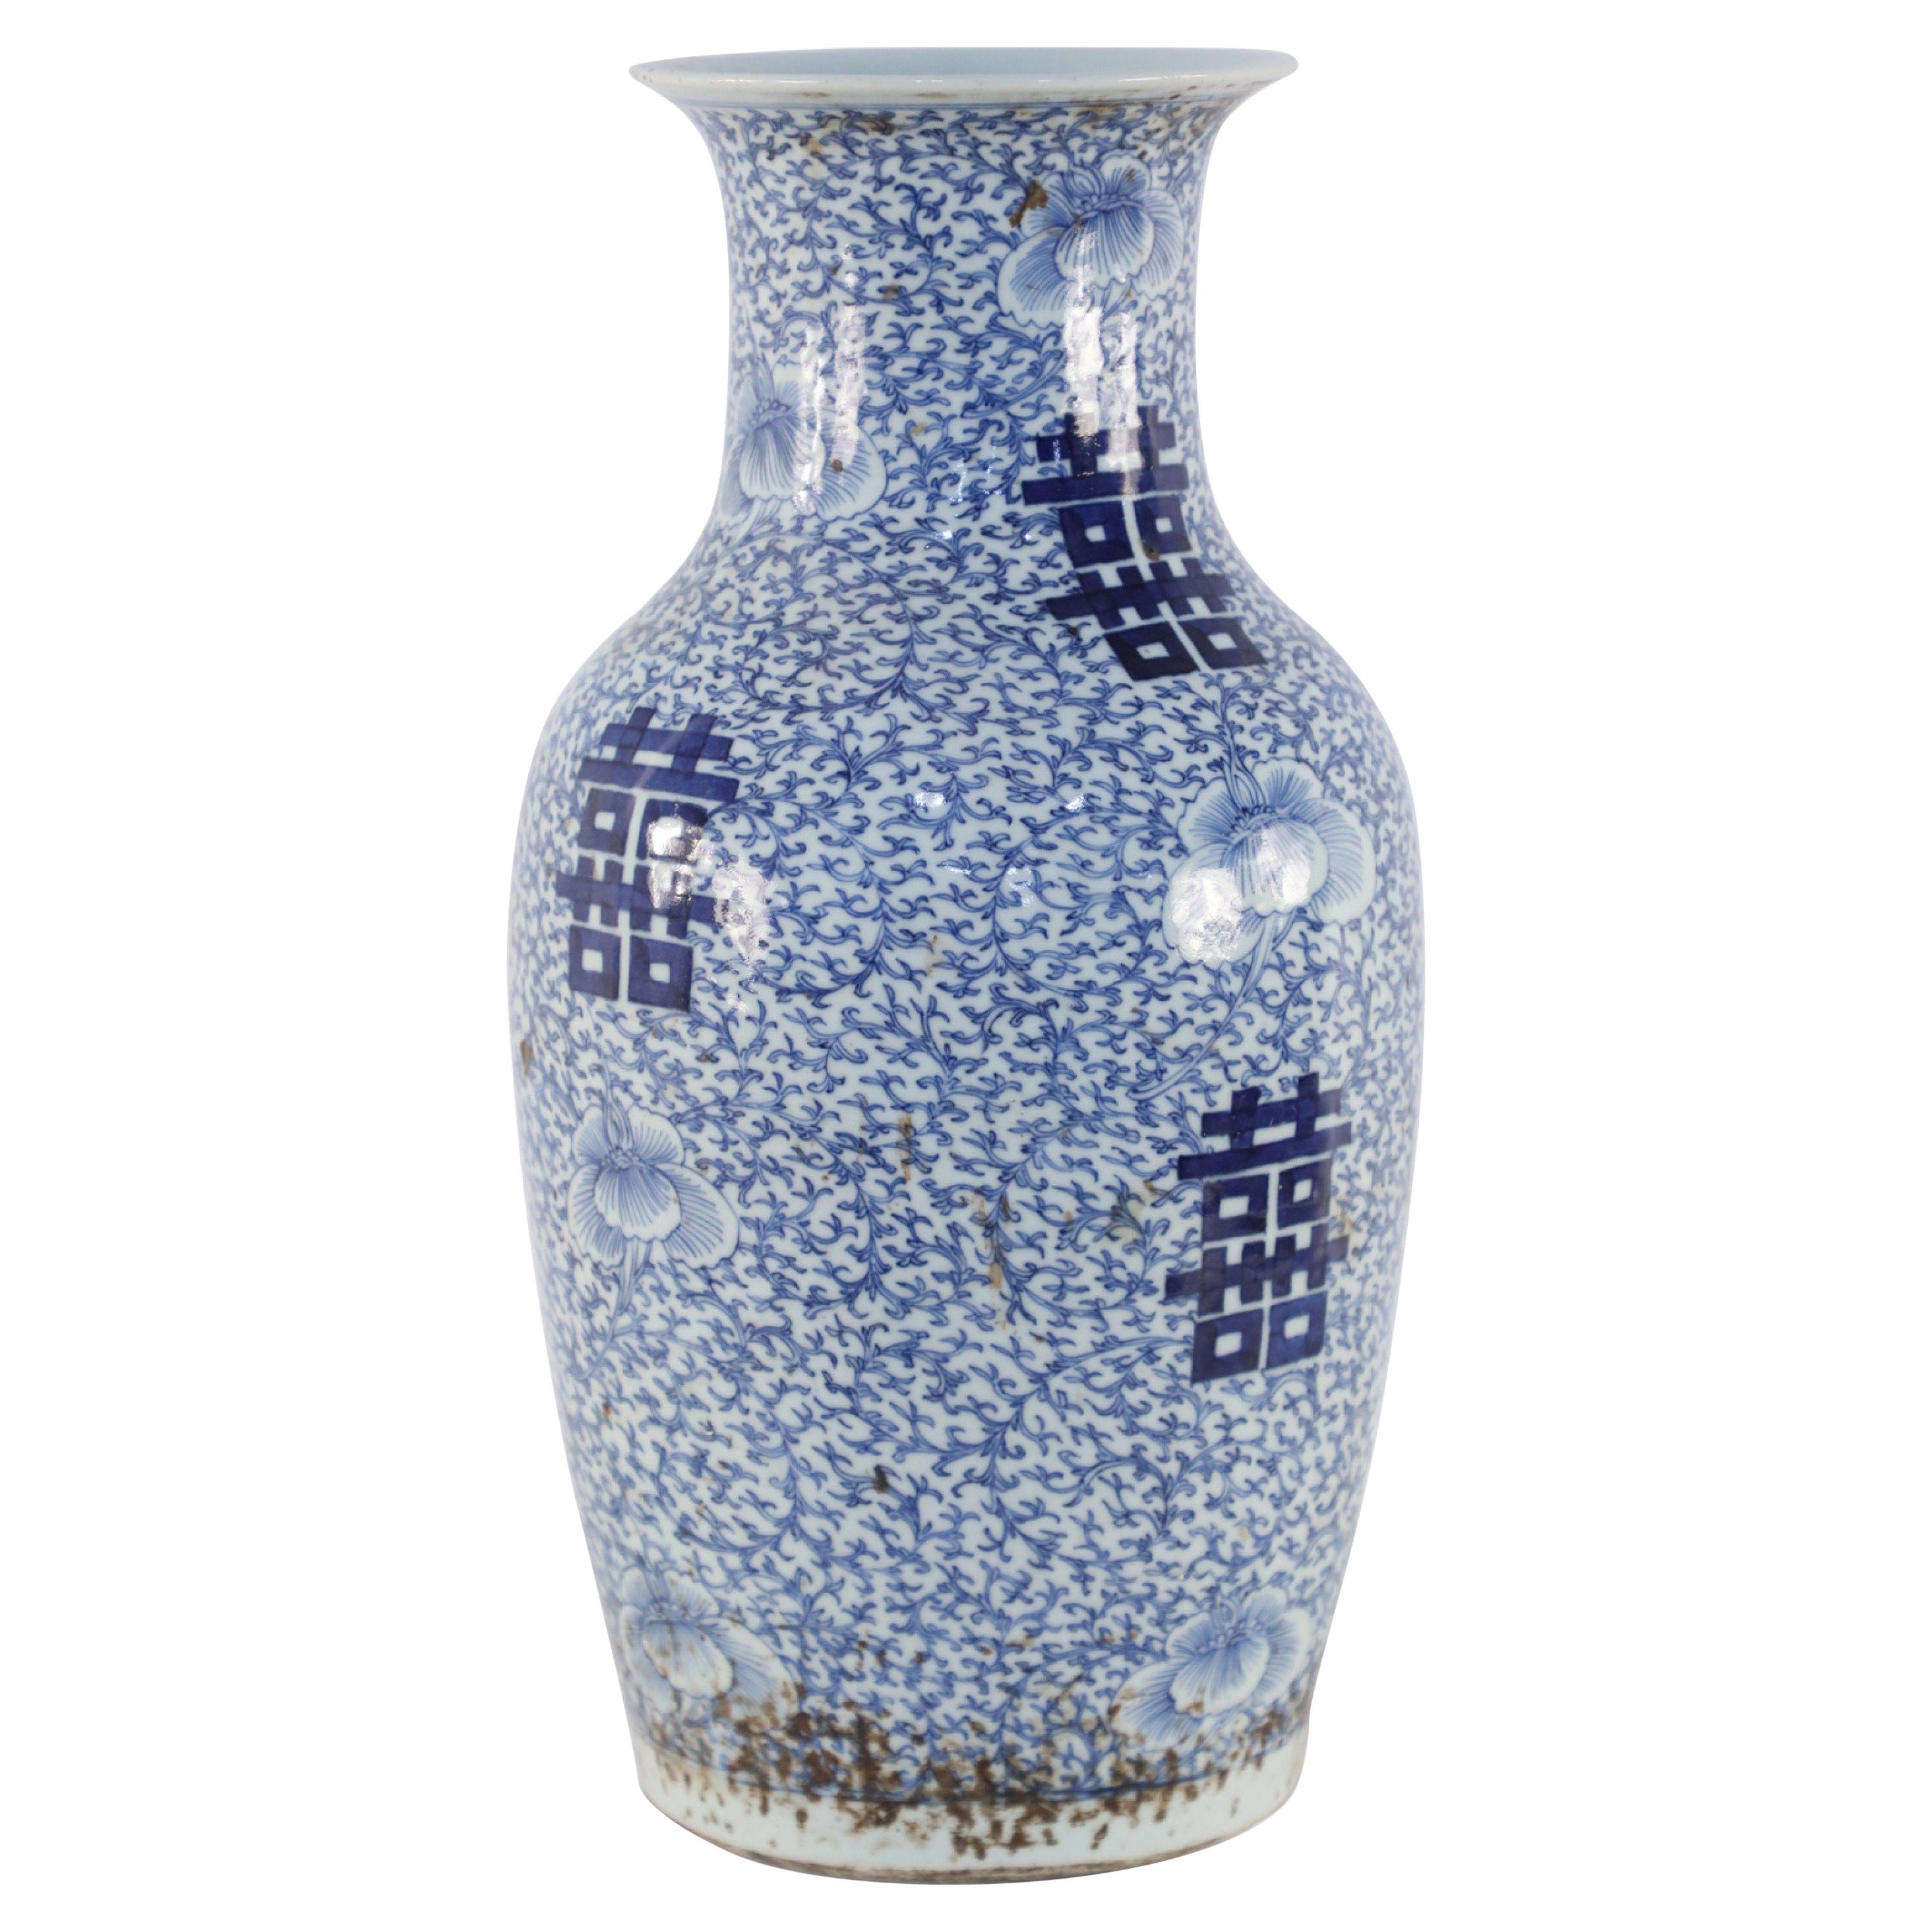 Chinesische Porzellanurne in Weiß und Blau im Vine-Design, Chinesisch